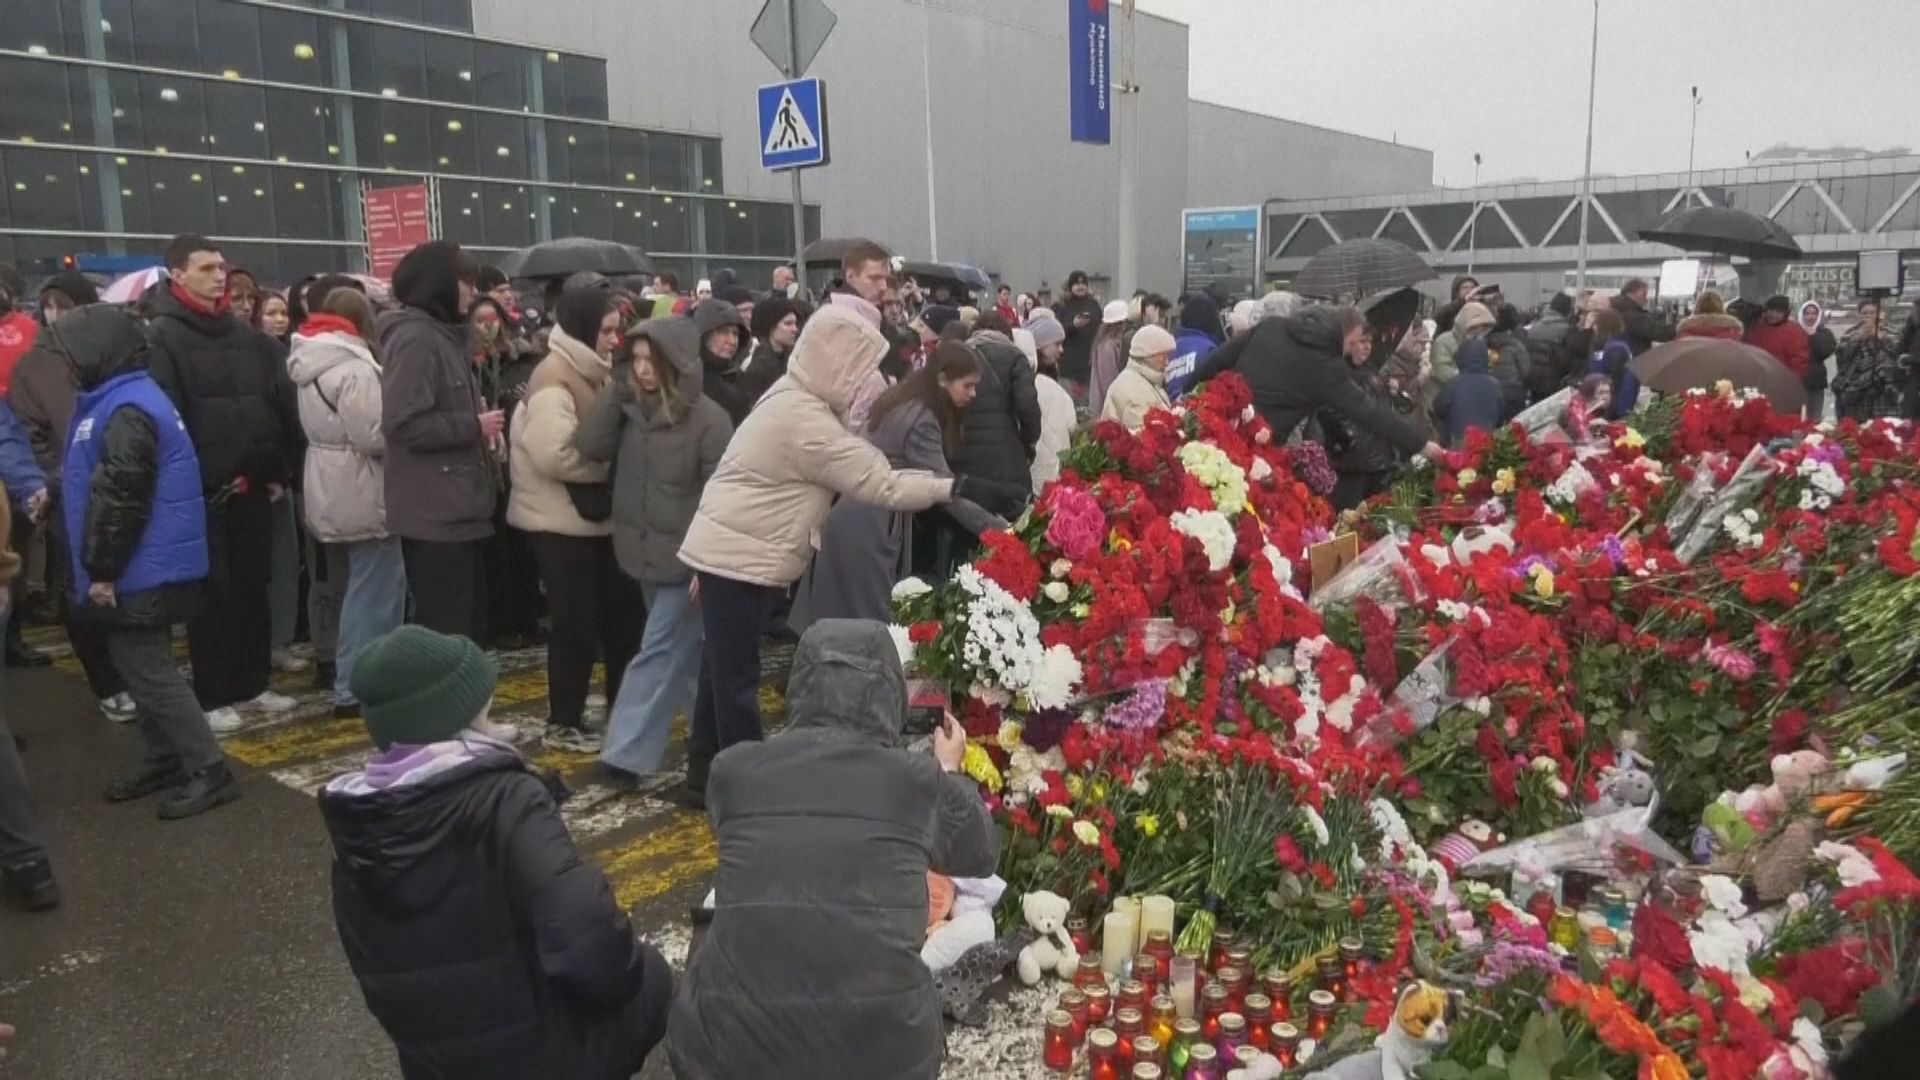 莫斯科音樂廳恐襲增至137人死亡 俄羅斯全國哀悼死難者